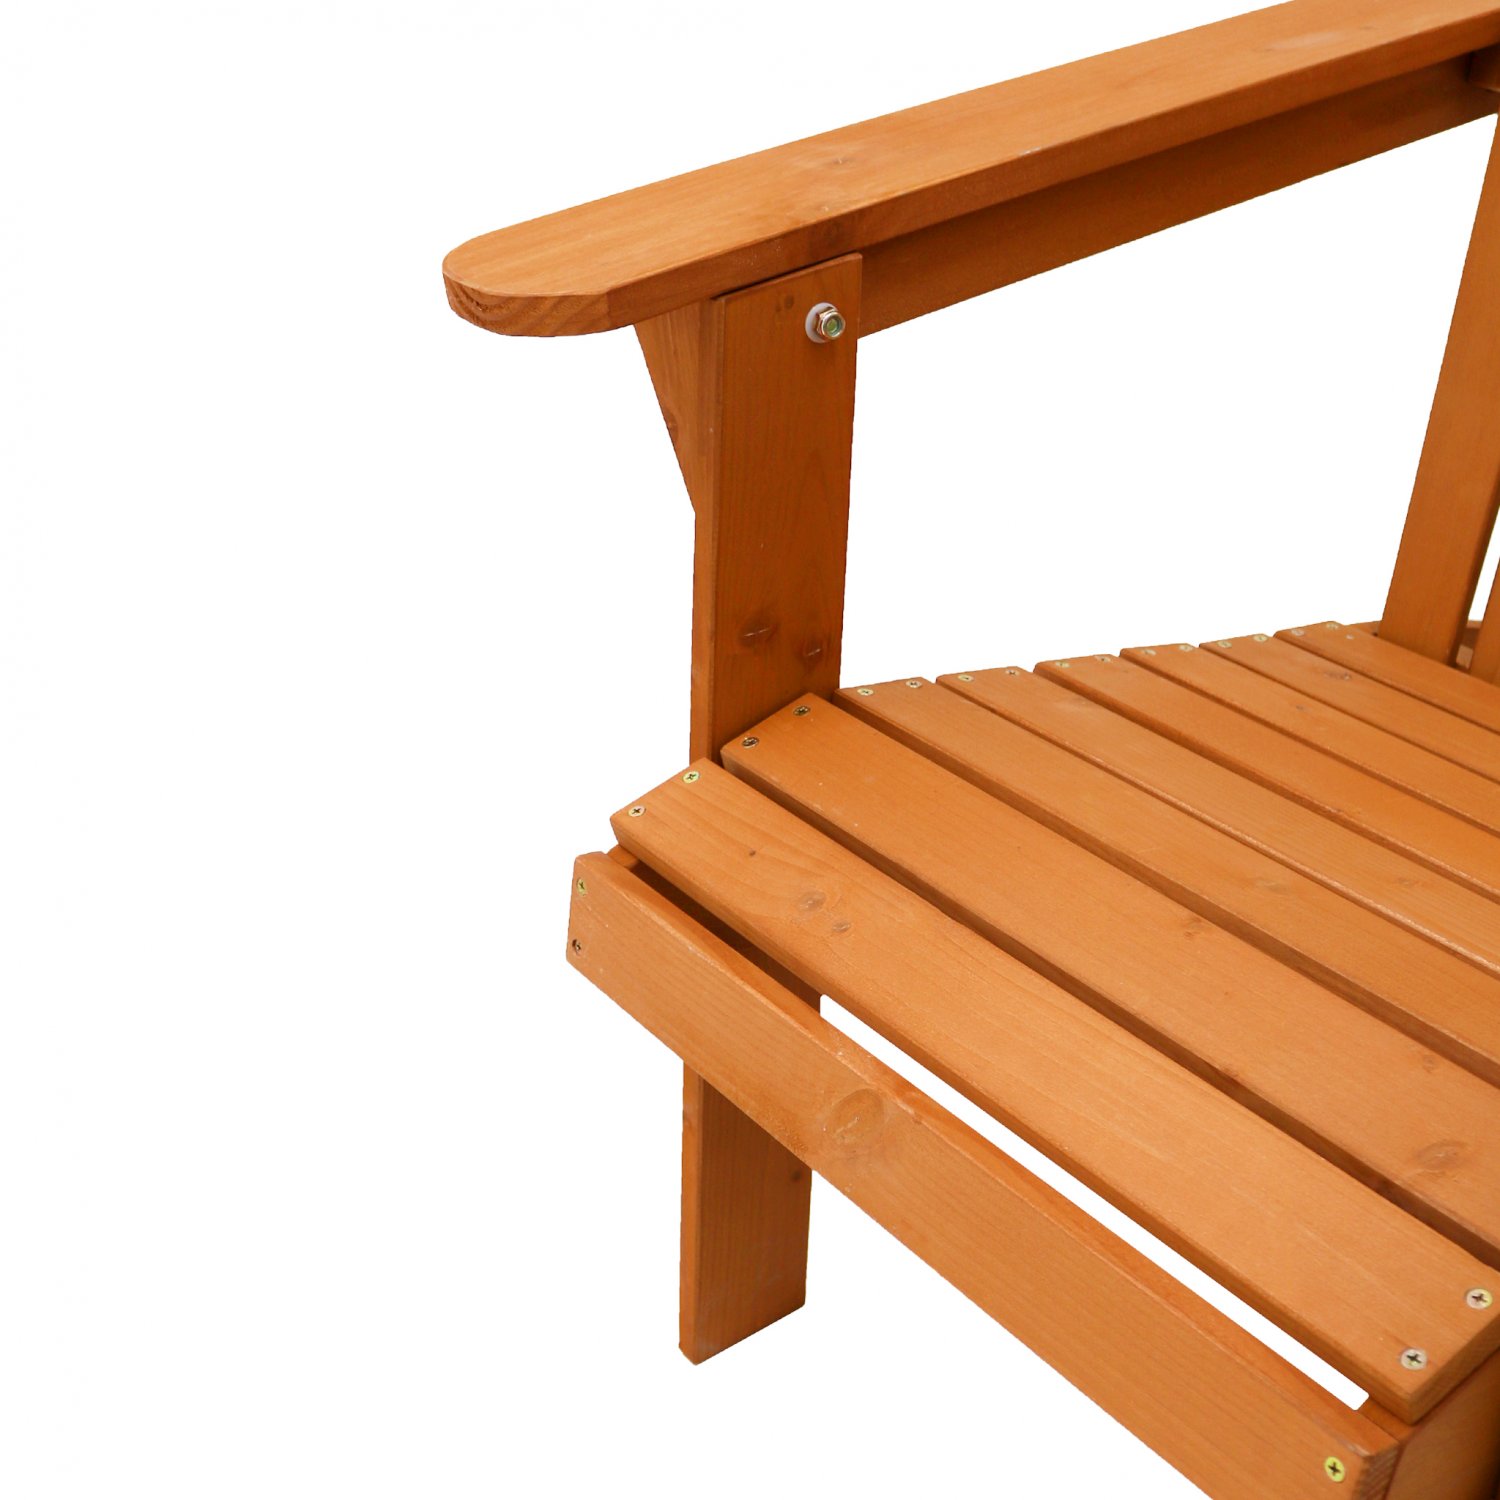 USA_BEST_SELLER Outdoor Foldable Fir Wood Adirondack Chair Fir Wood Construction Patio Deck Garden Deck Furniture 